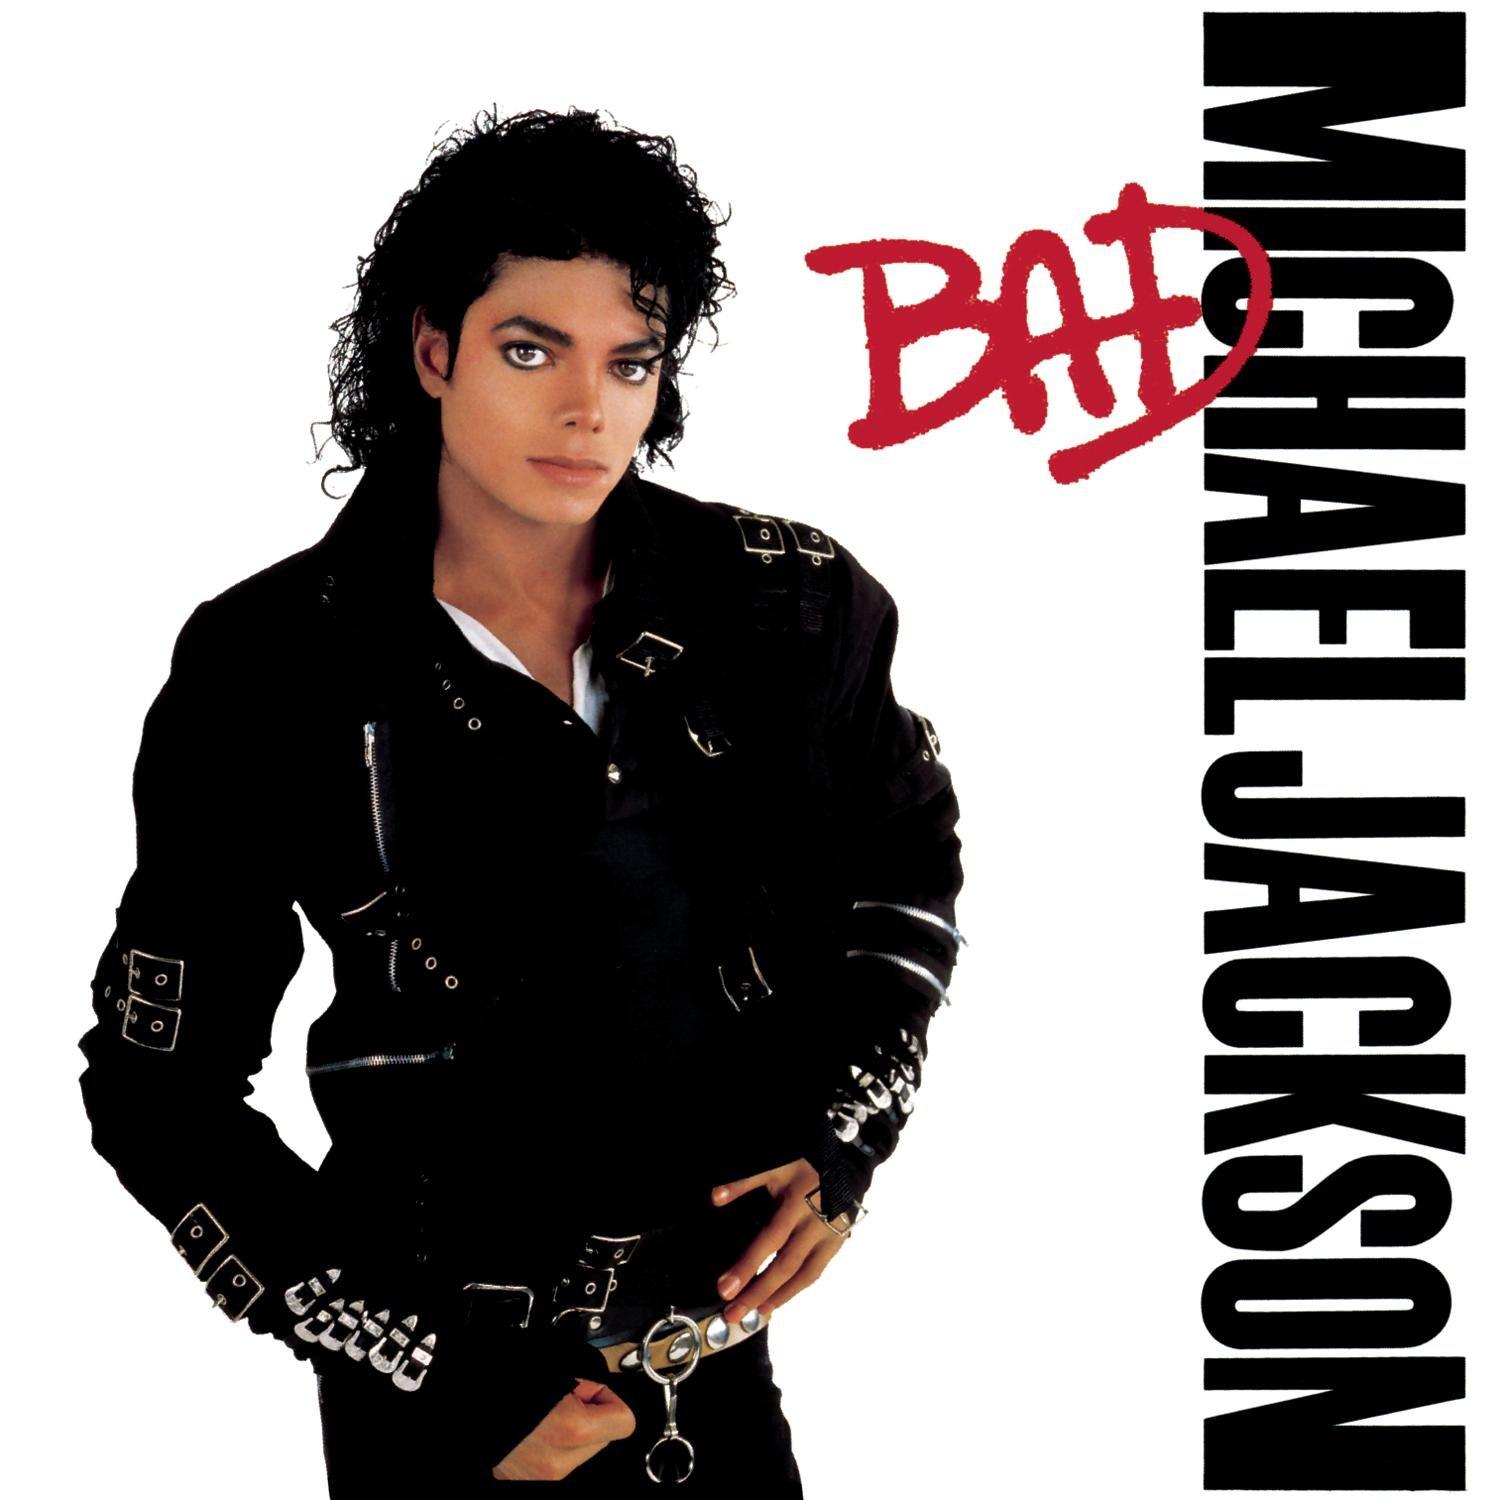 1500 x 1500 · jpeg - Michael Jackson - Bad - Amazon Music